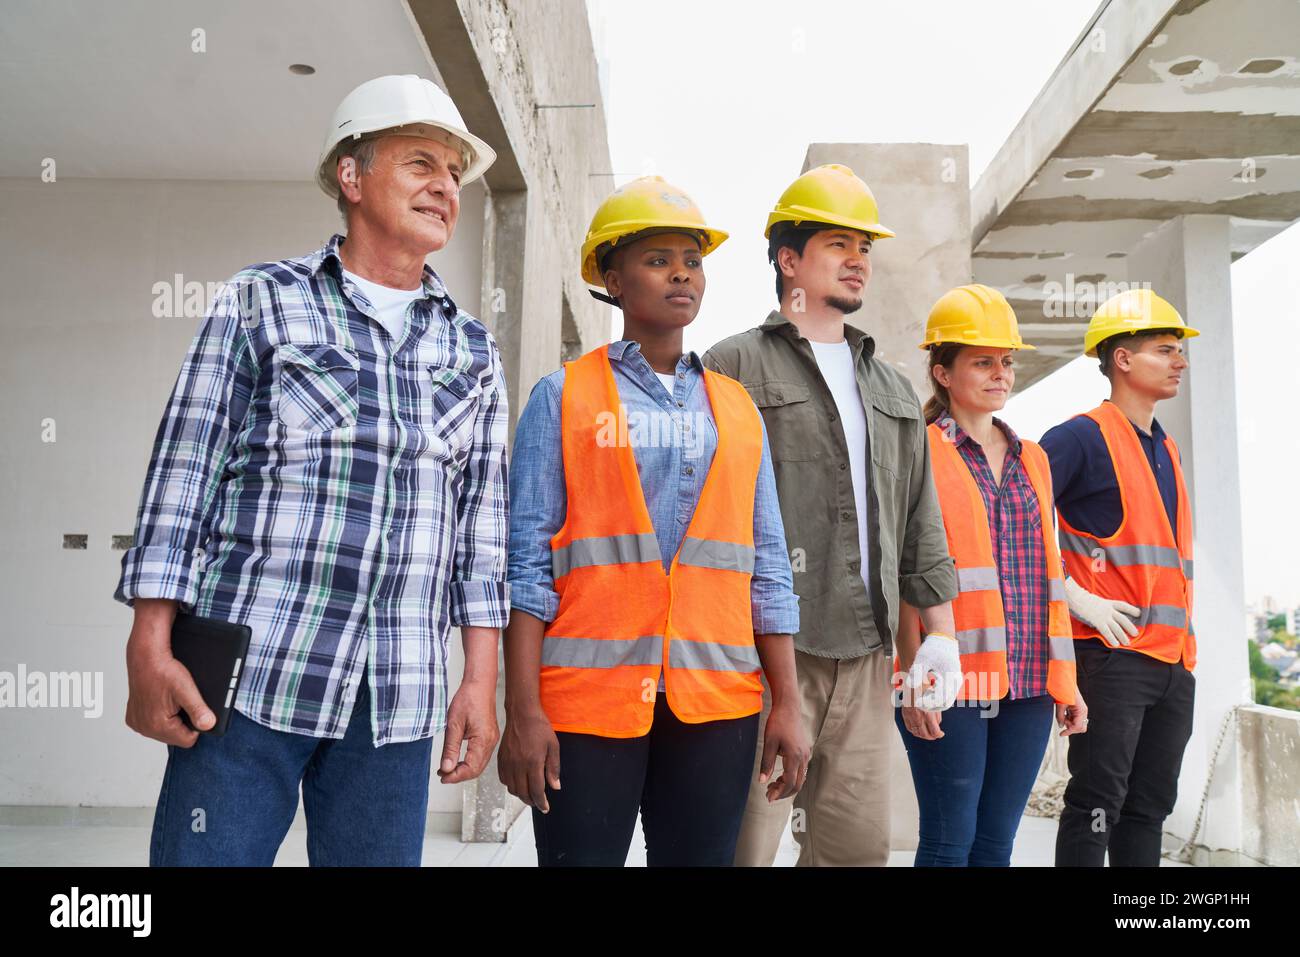 Selbstbewusstes Team von Arbeitern in Arbeitskleidung, das wegblickt Stockfoto